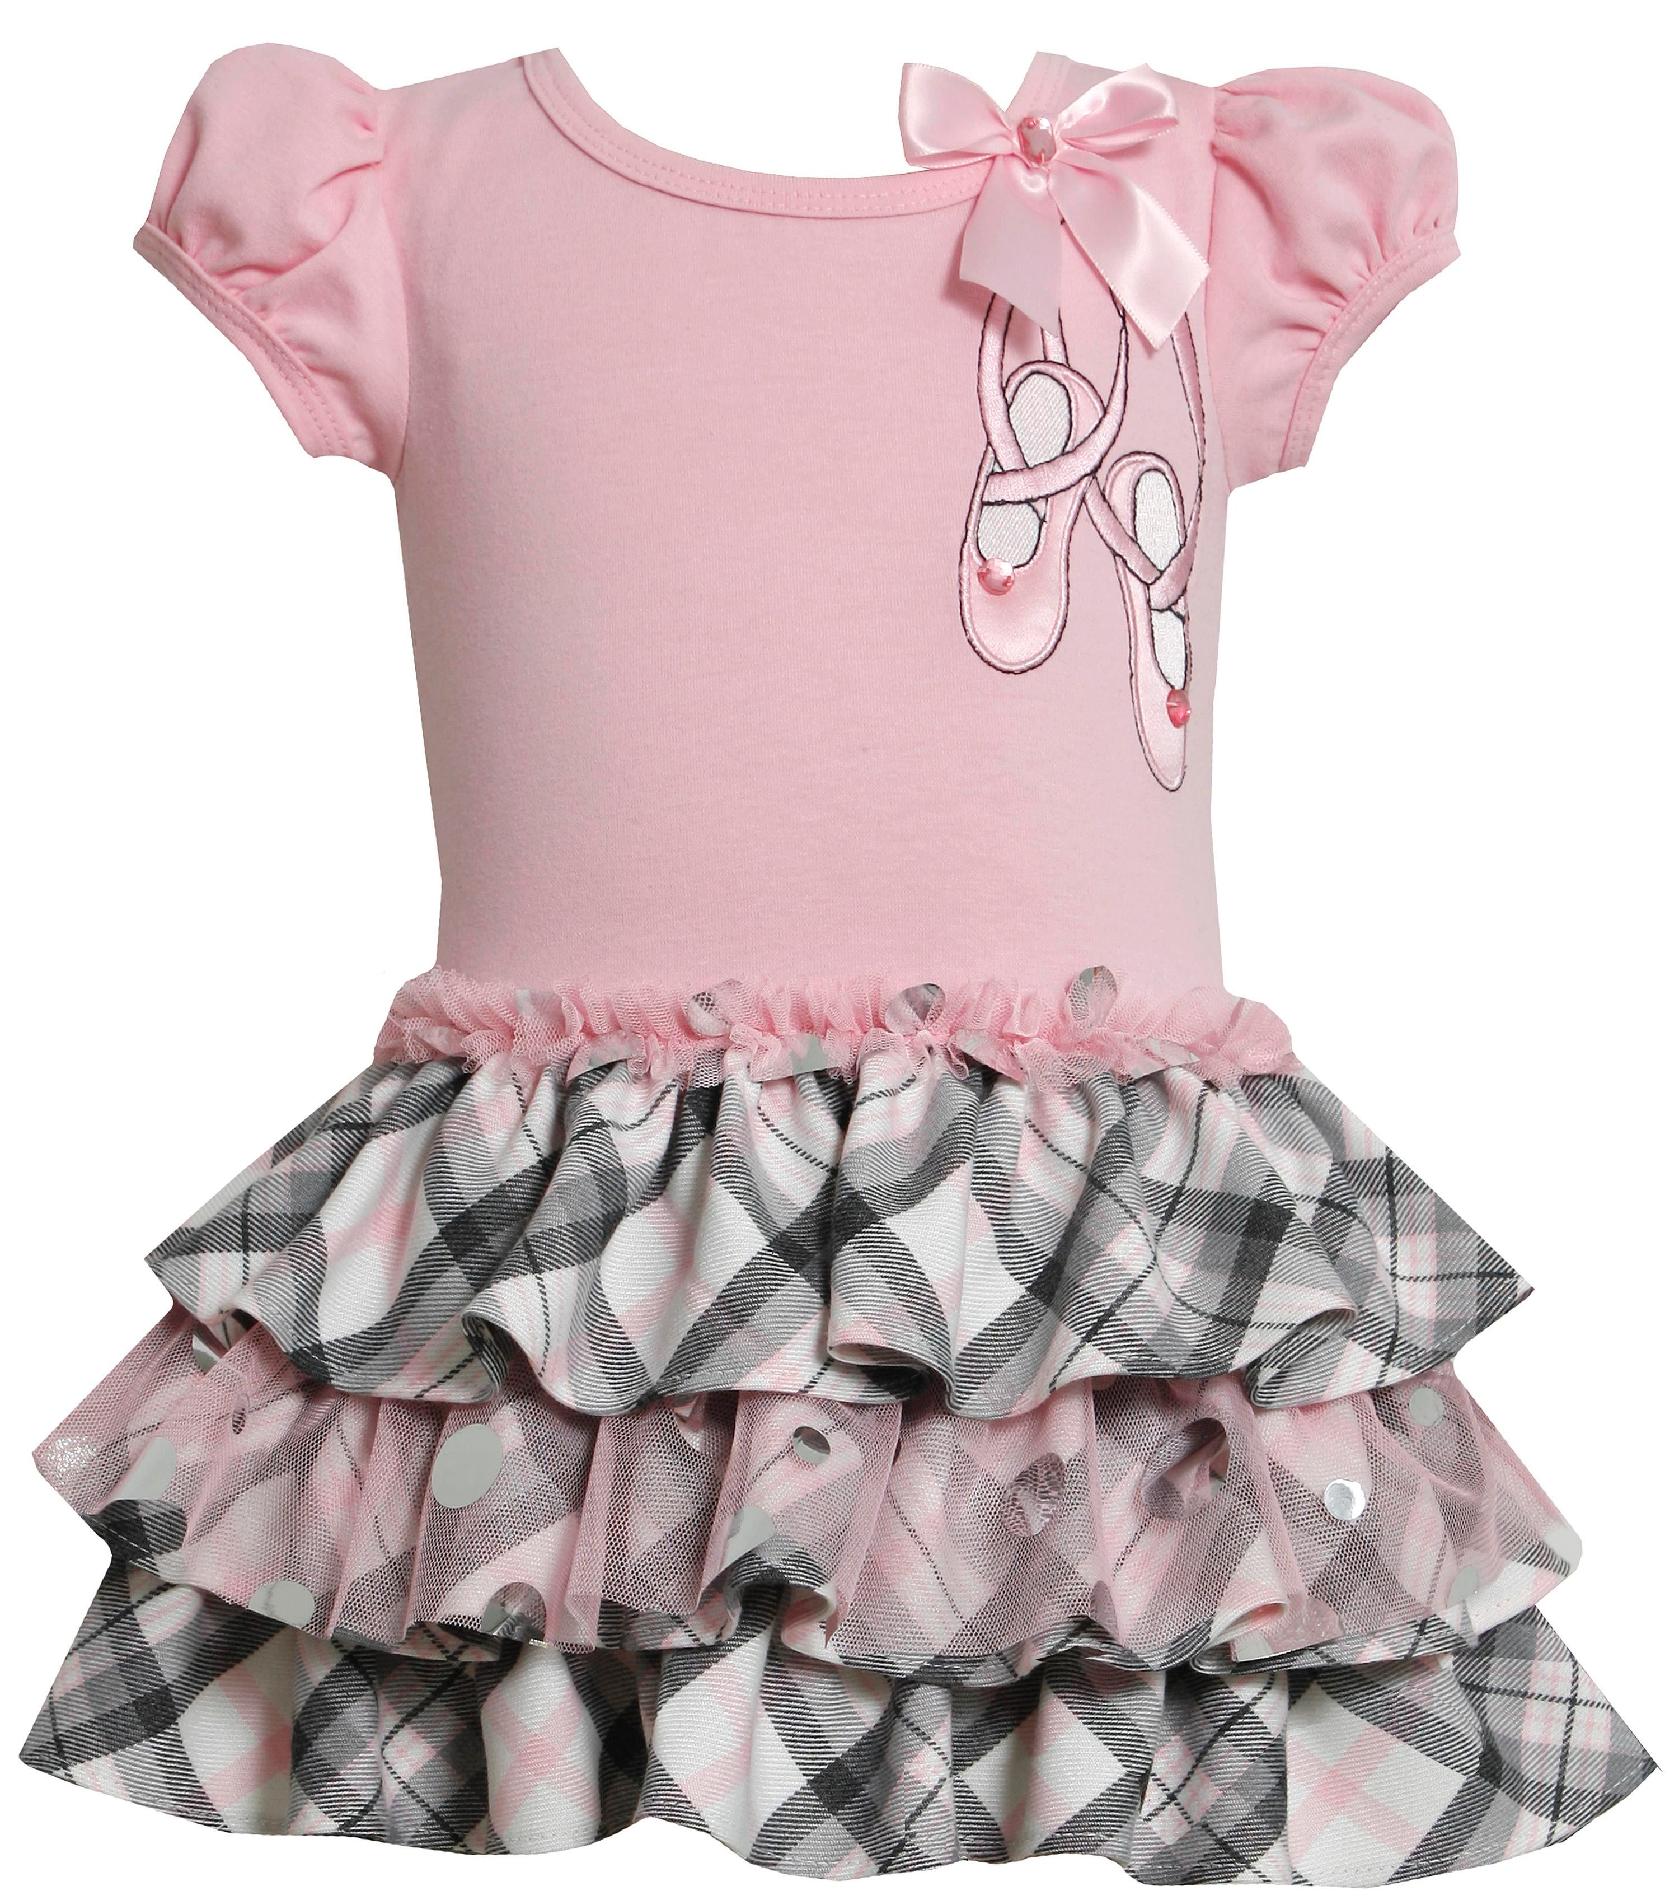 Ashley Ann Infant & Toddler Girl's Party Dress - Ballet Slippers & Plaid